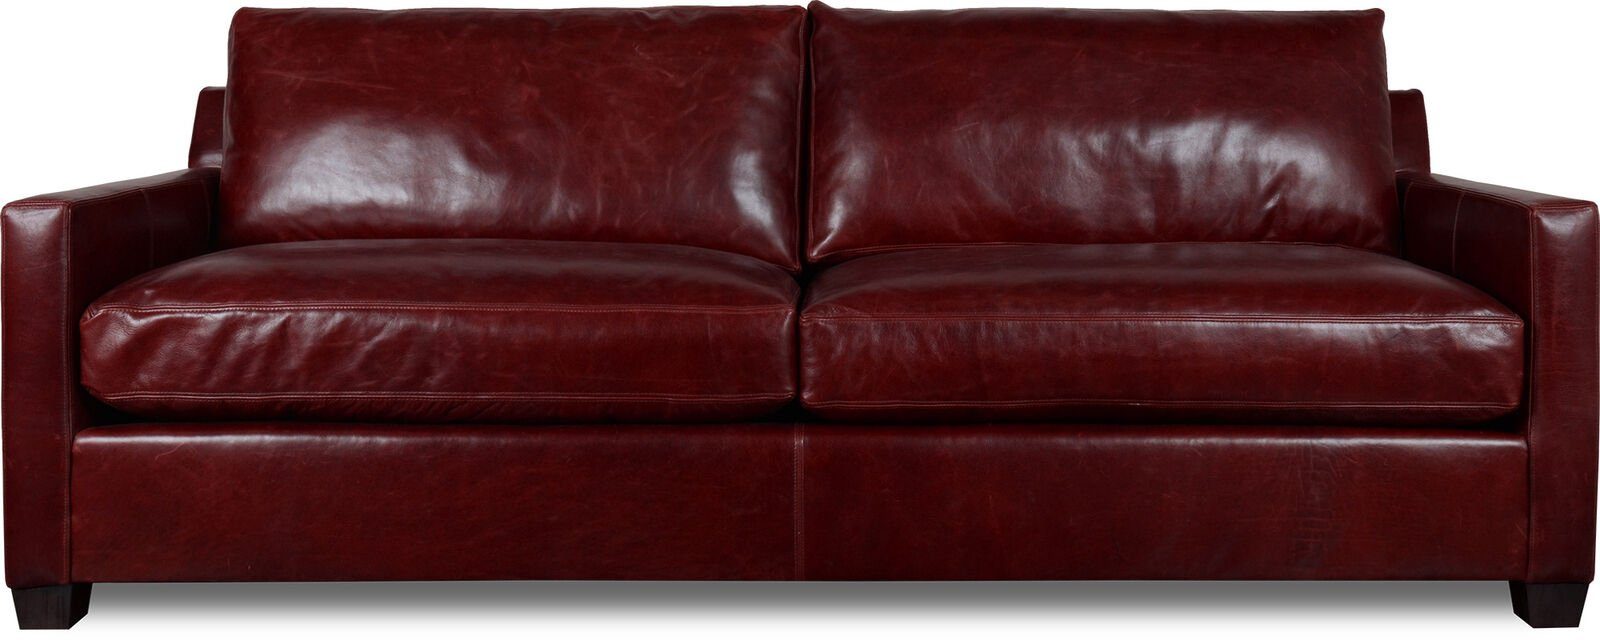 JVmoebel 3-Sitzer XXL Sofa 3 Sitzer Couch Polster Sitz Garnitur Leder Rot Sofas Neu, Made in Europe | Einzelsofas